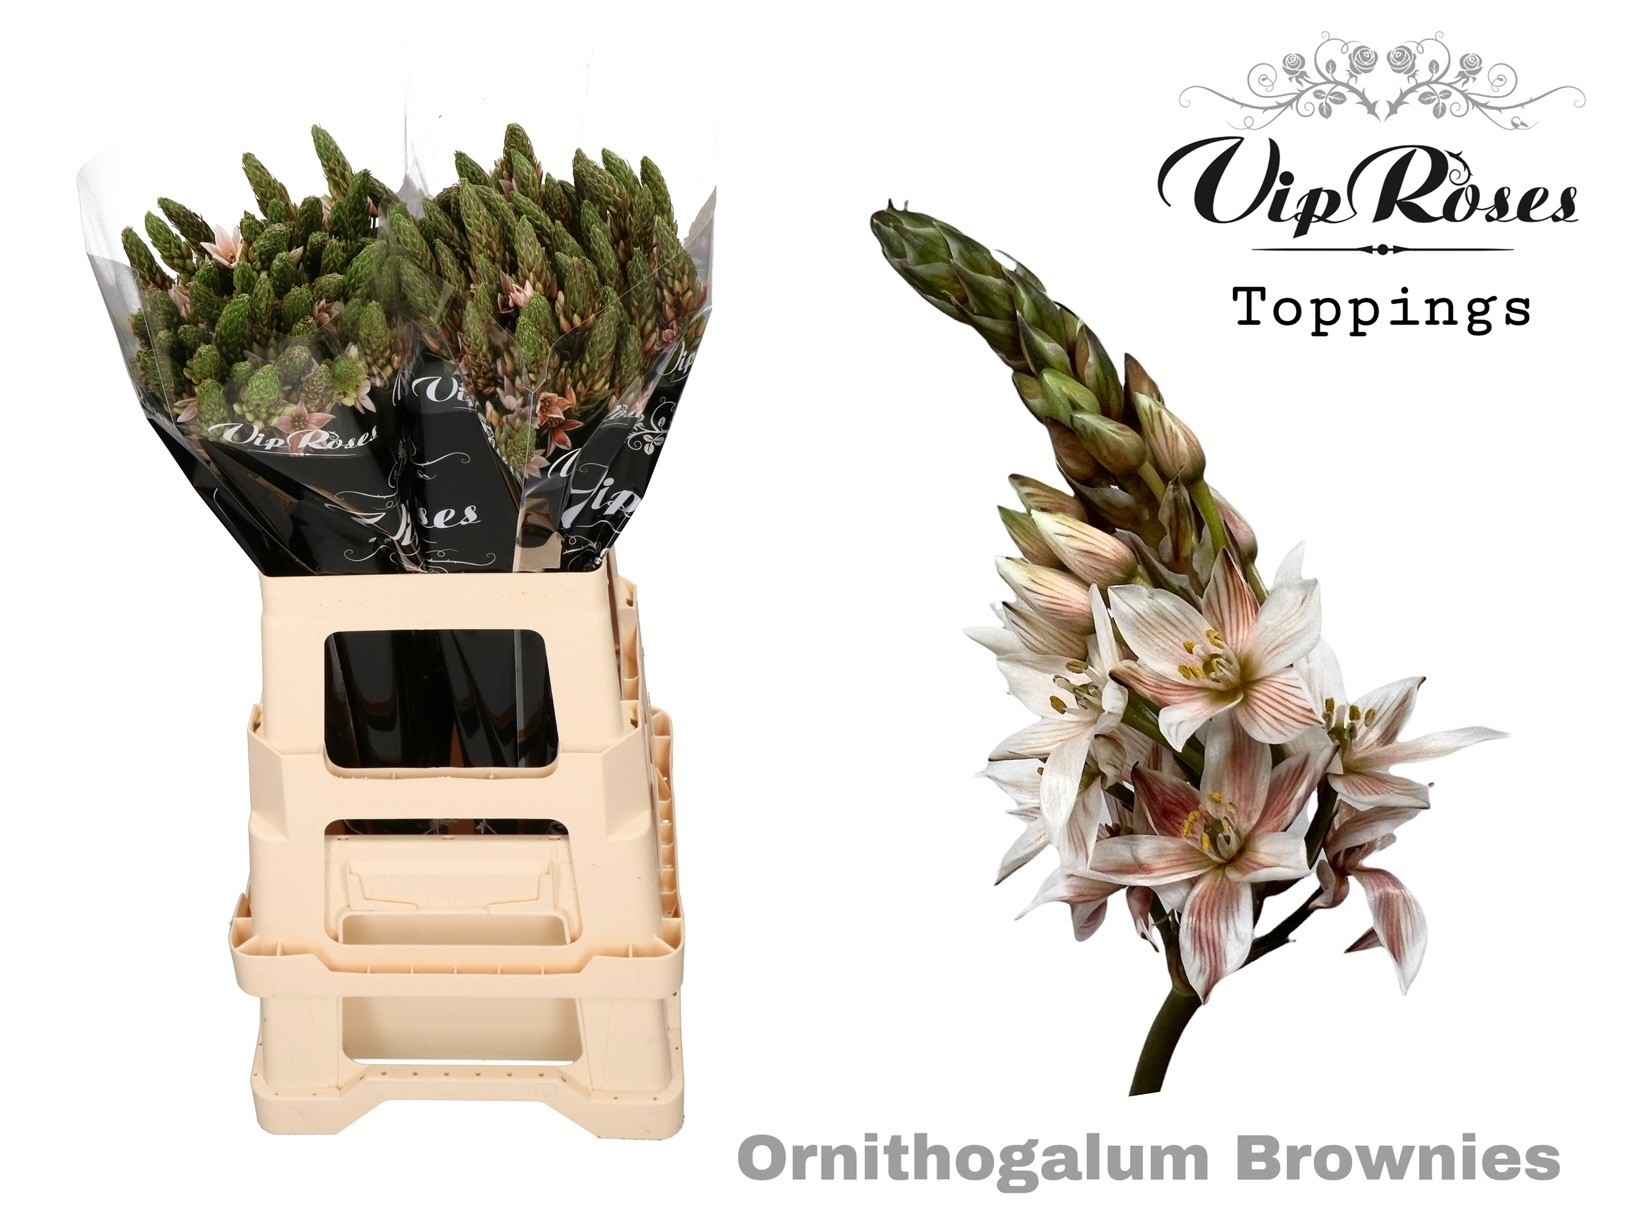 Срезанные цветы оптом Ornithogalum paint brownies от 100шт из Голландии с доставкой по России